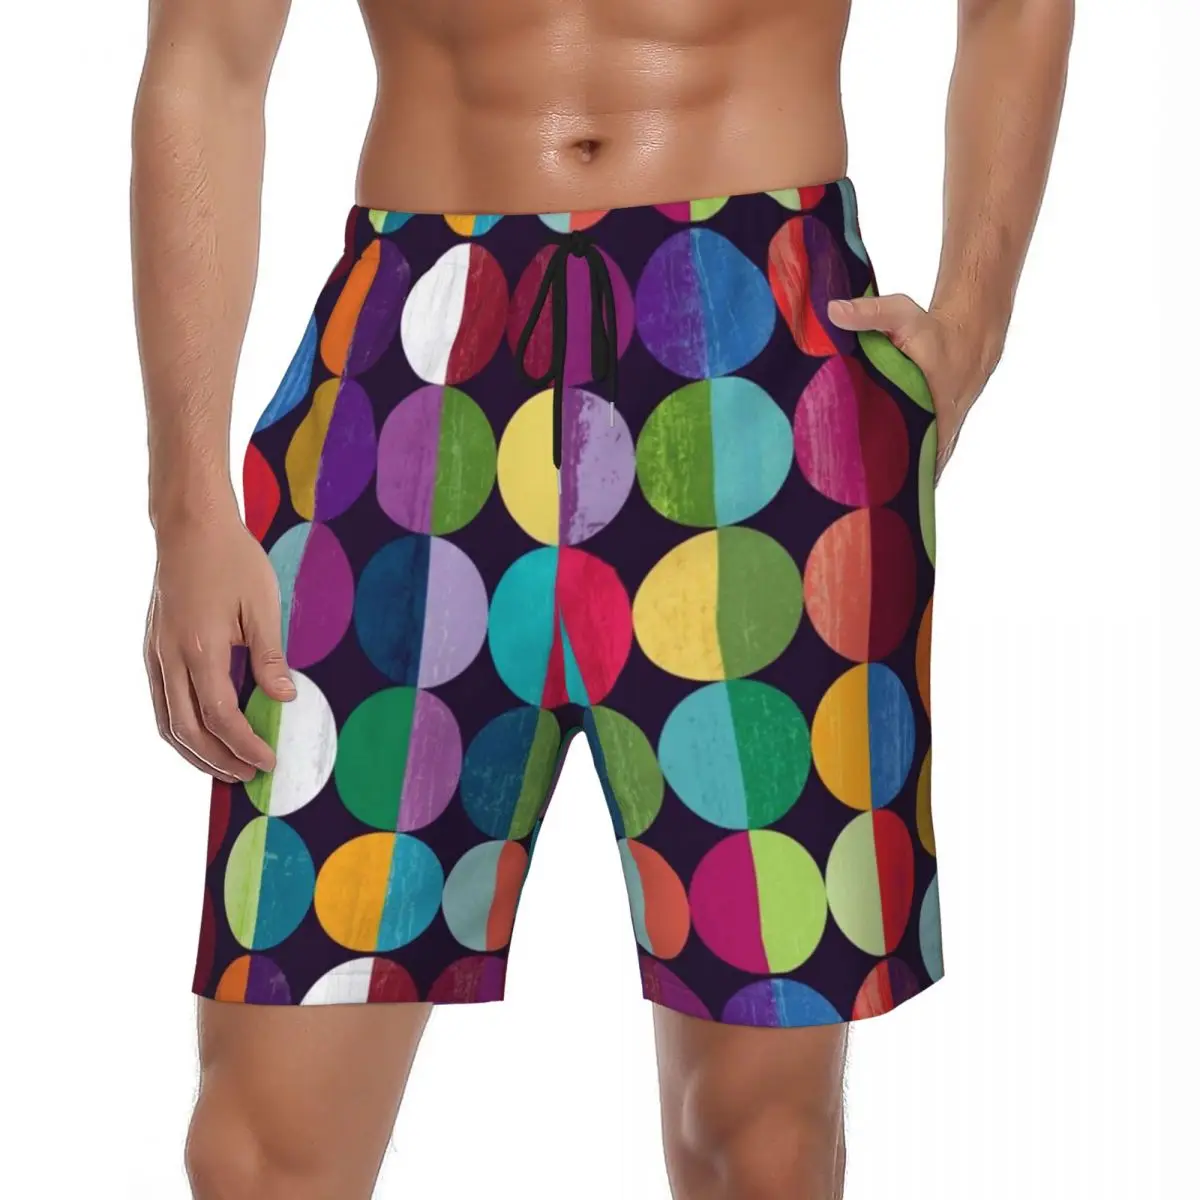 

Шорты мужские пляжные цветные с круглым принтом, повседневные штаны для спортзала и серфинга, удобные Пользовательские трусы, летние